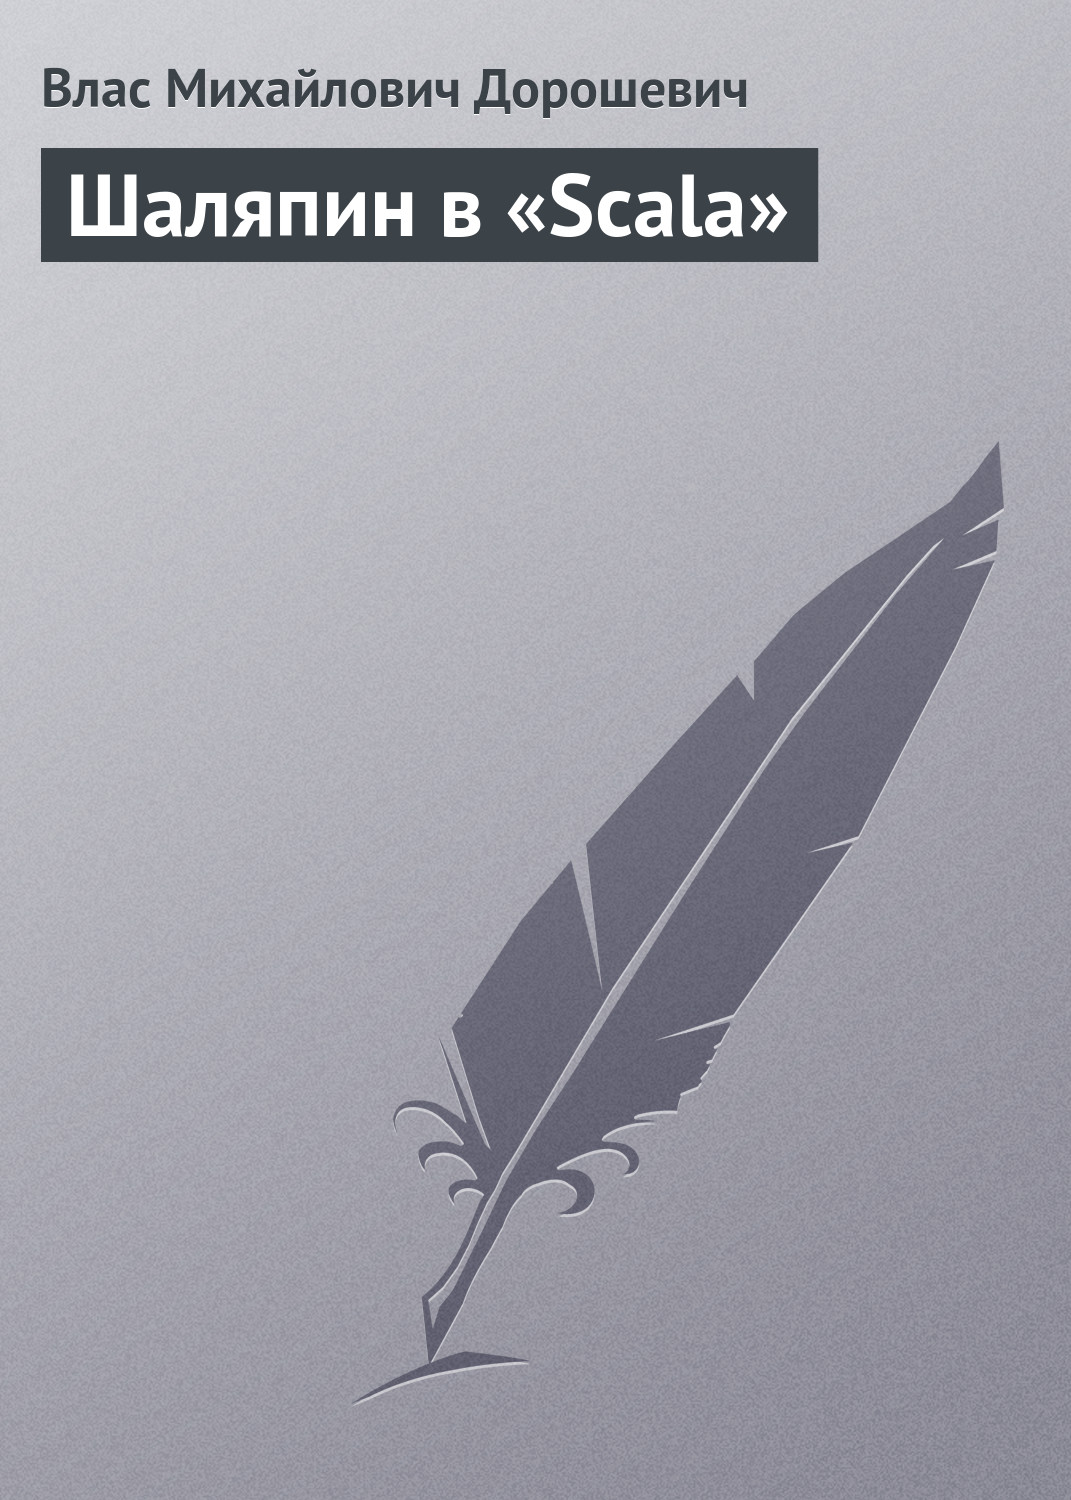 Книга Шаляпин в «Scala» из серии , созданная Влас Дорошевич, может относится к жанру Биографии и Мемуары. Стоимость электронной книги Шаляпин в «Scala» с идентификатором 652695 составляет 9.99 руб.